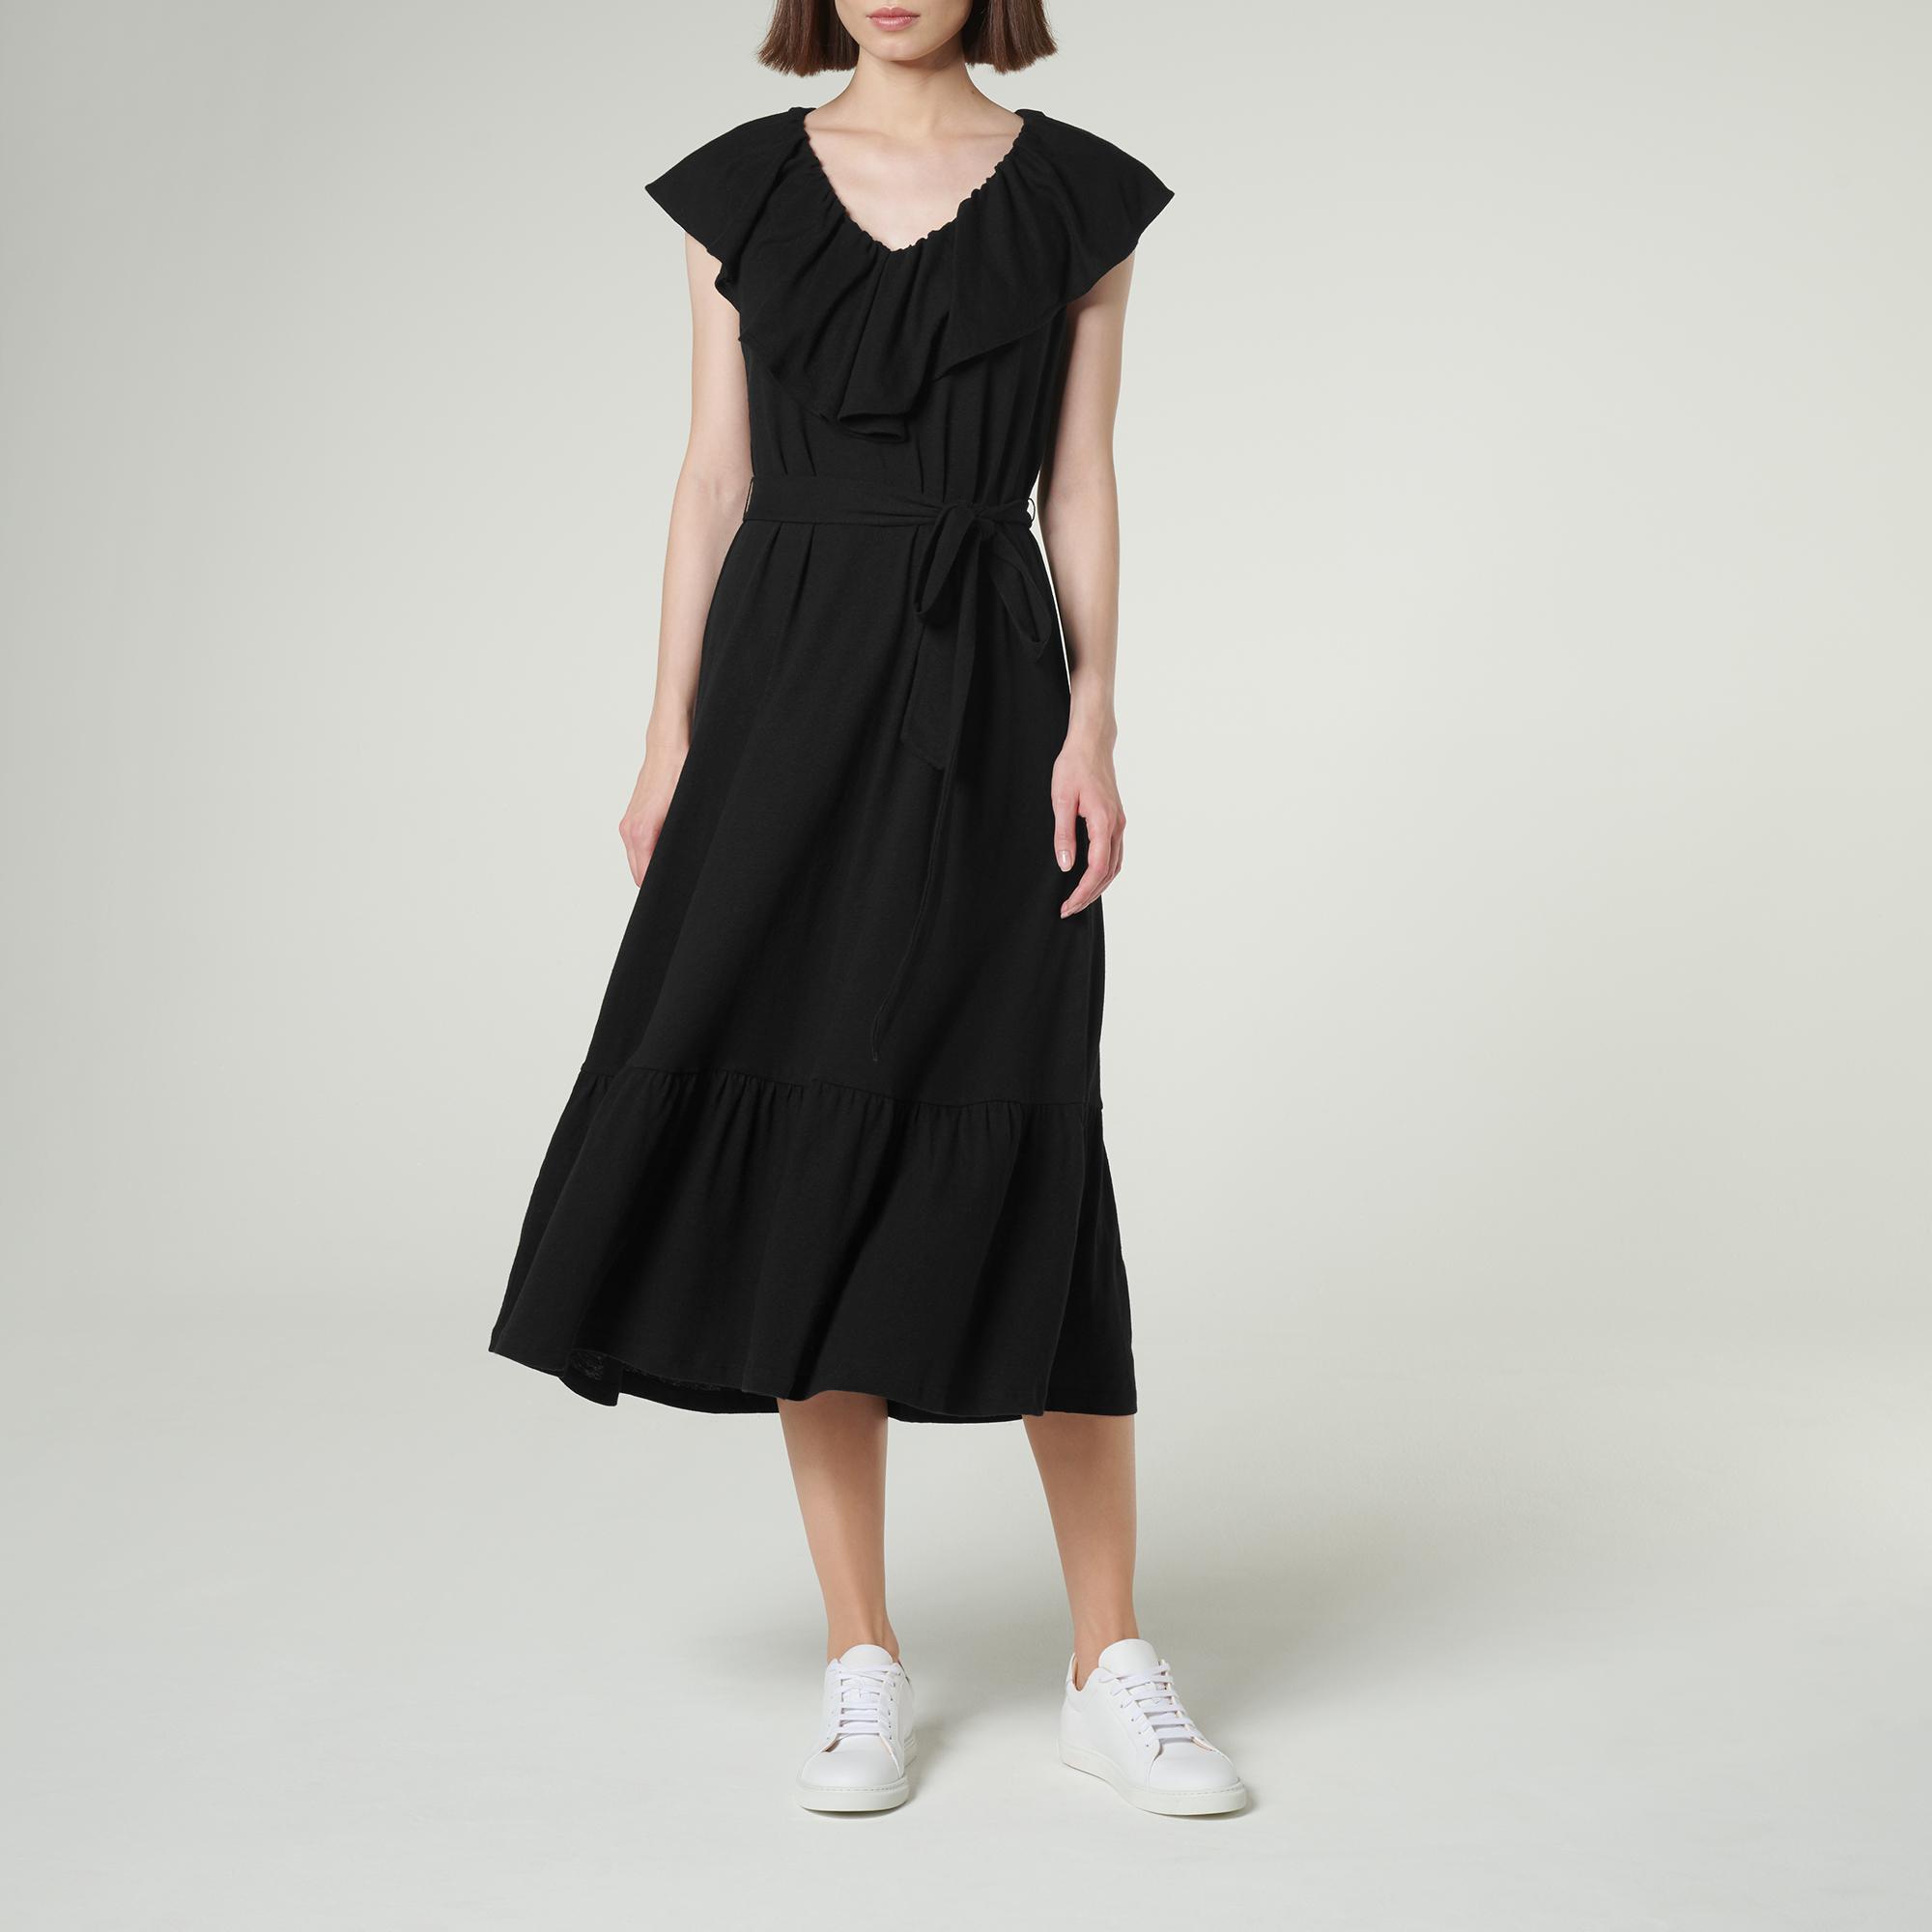 L.K.Bennett Margret Black Cotton Linen Dress | eBay